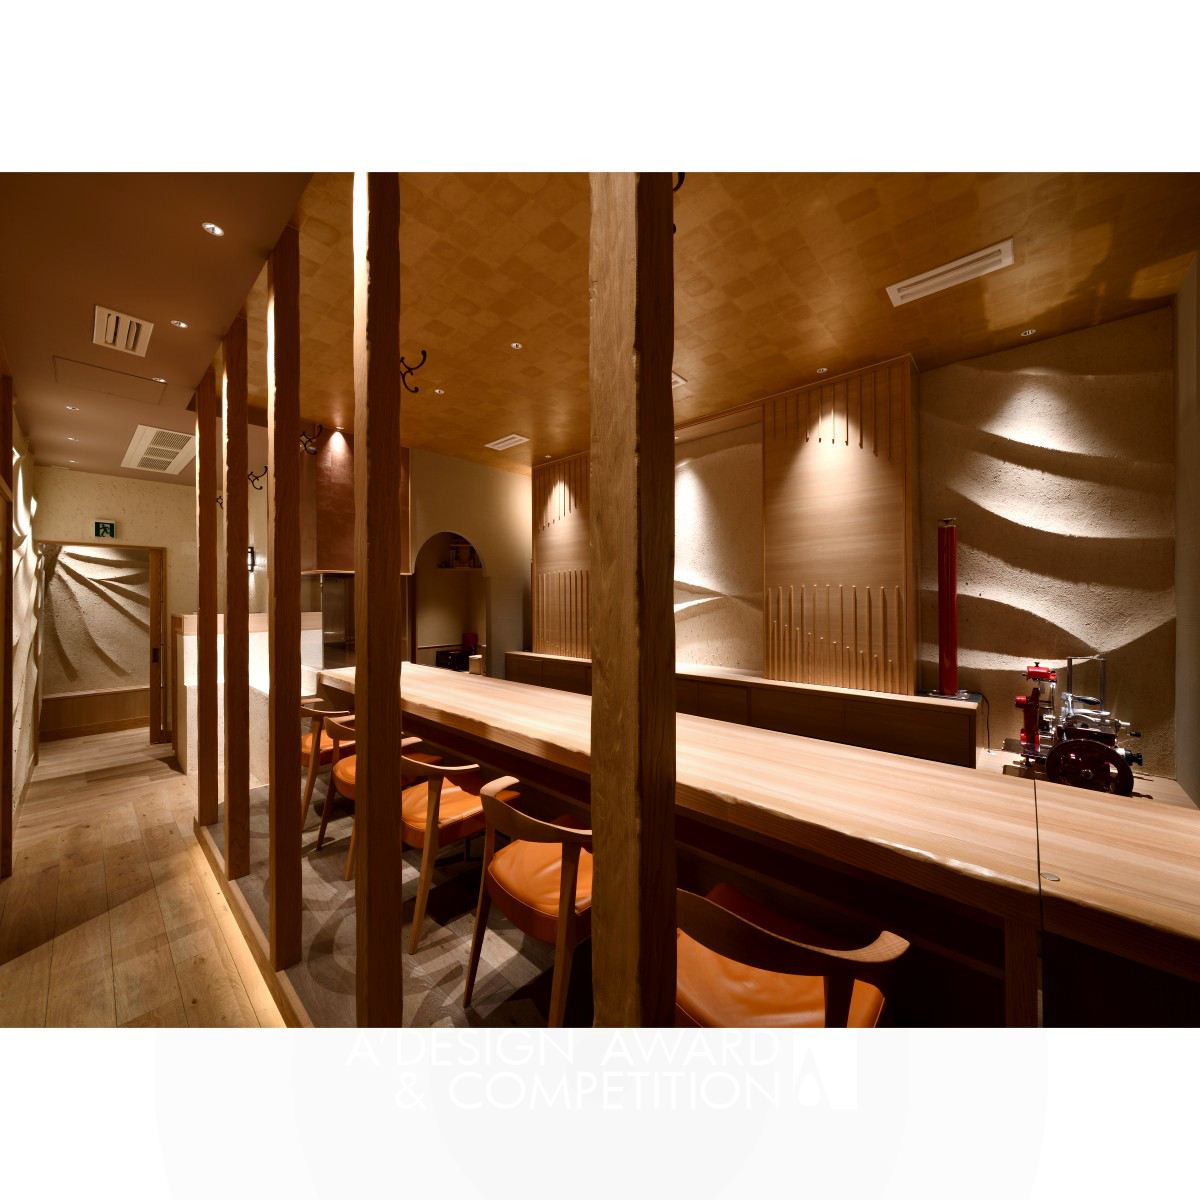 Shinjiro Heshiki Restaurant and Champagne Bar